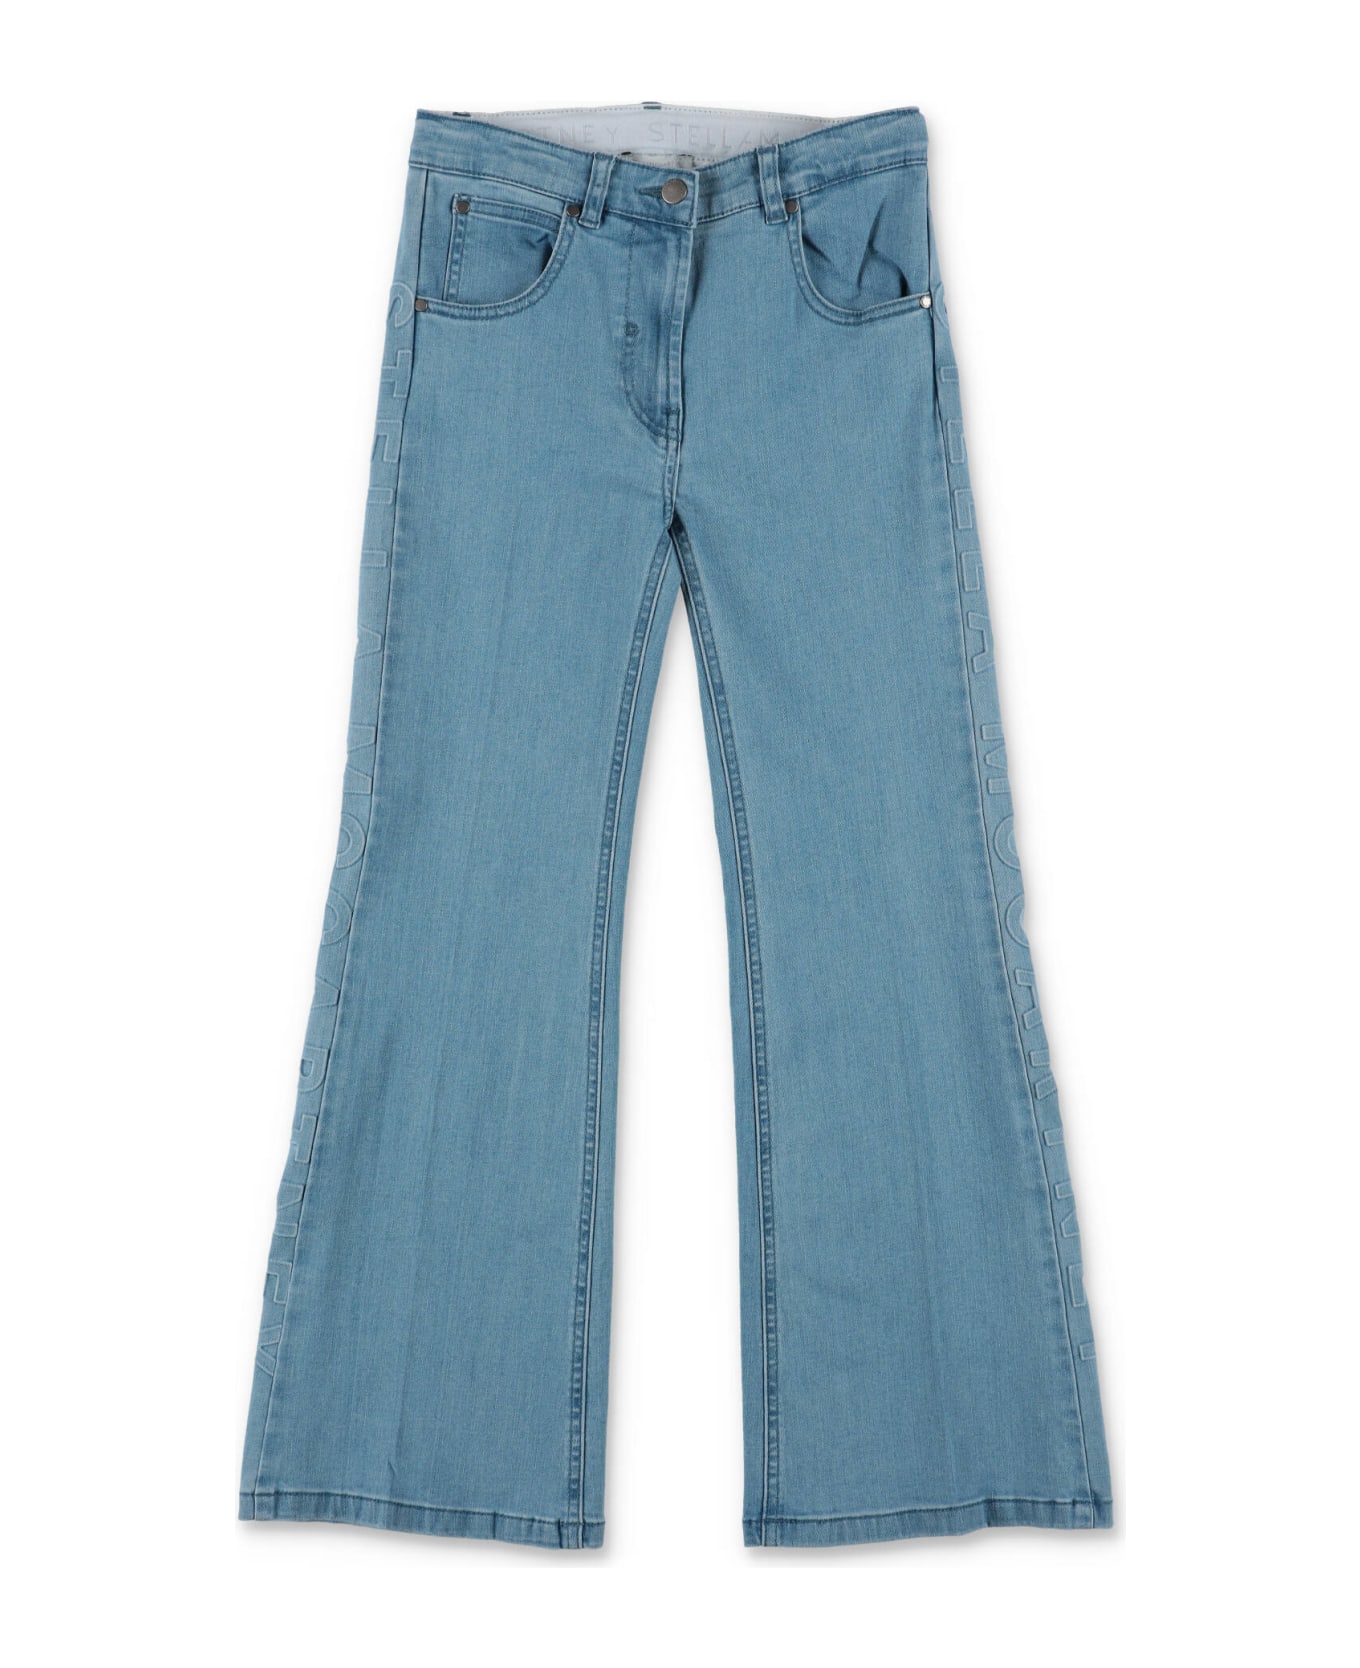 Stella McCartney Kids Stella Mccartney Jeans Blu Chiaro In Denim Di Cotone Stretch Bambina - Blu